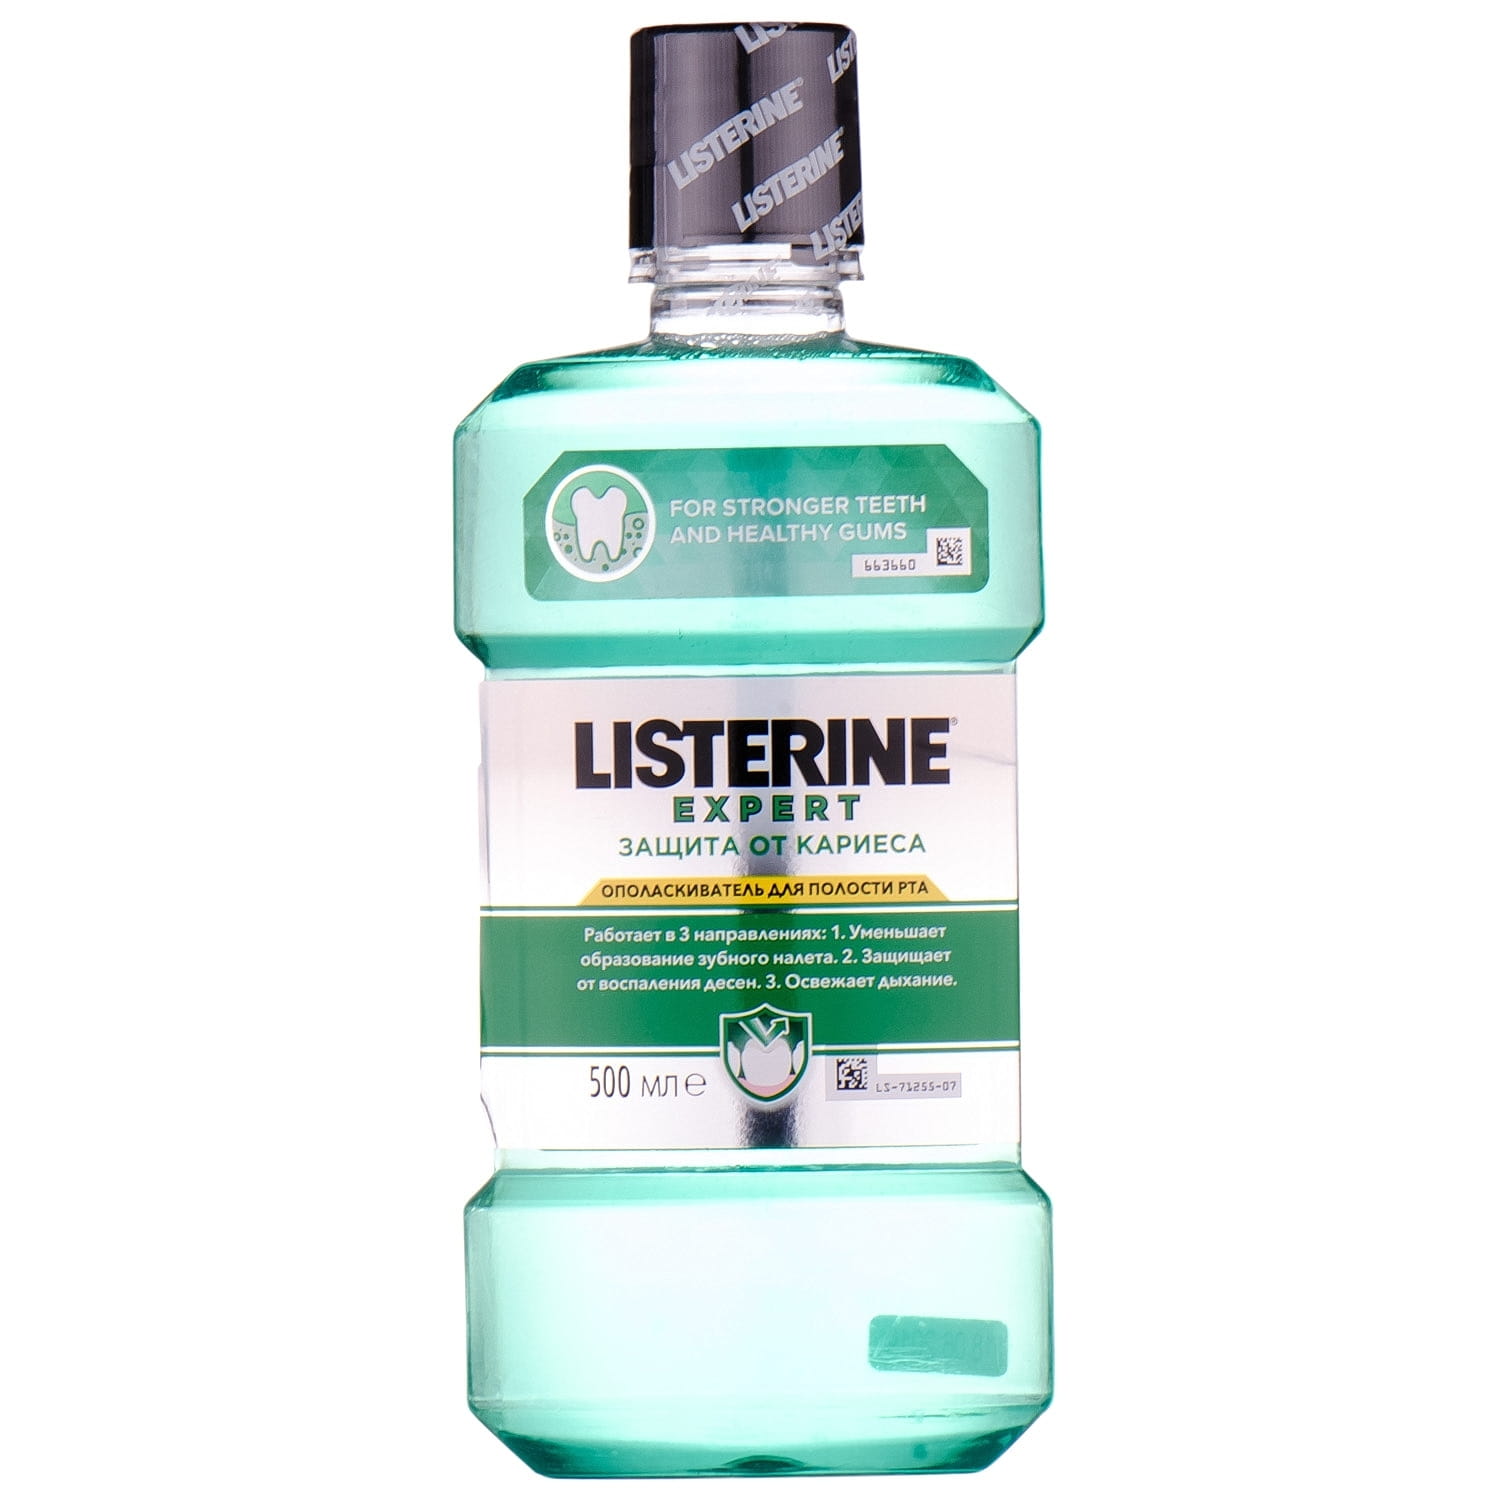 Listerine ополаскиватель купить. Листерин ополаскиватель. Ополаскиватель для рта Листерин. Ополаскиватель для полости рта Listerine от кариеса, 500 мл Listerine 3574661337227. Листерин защита от кариеса.